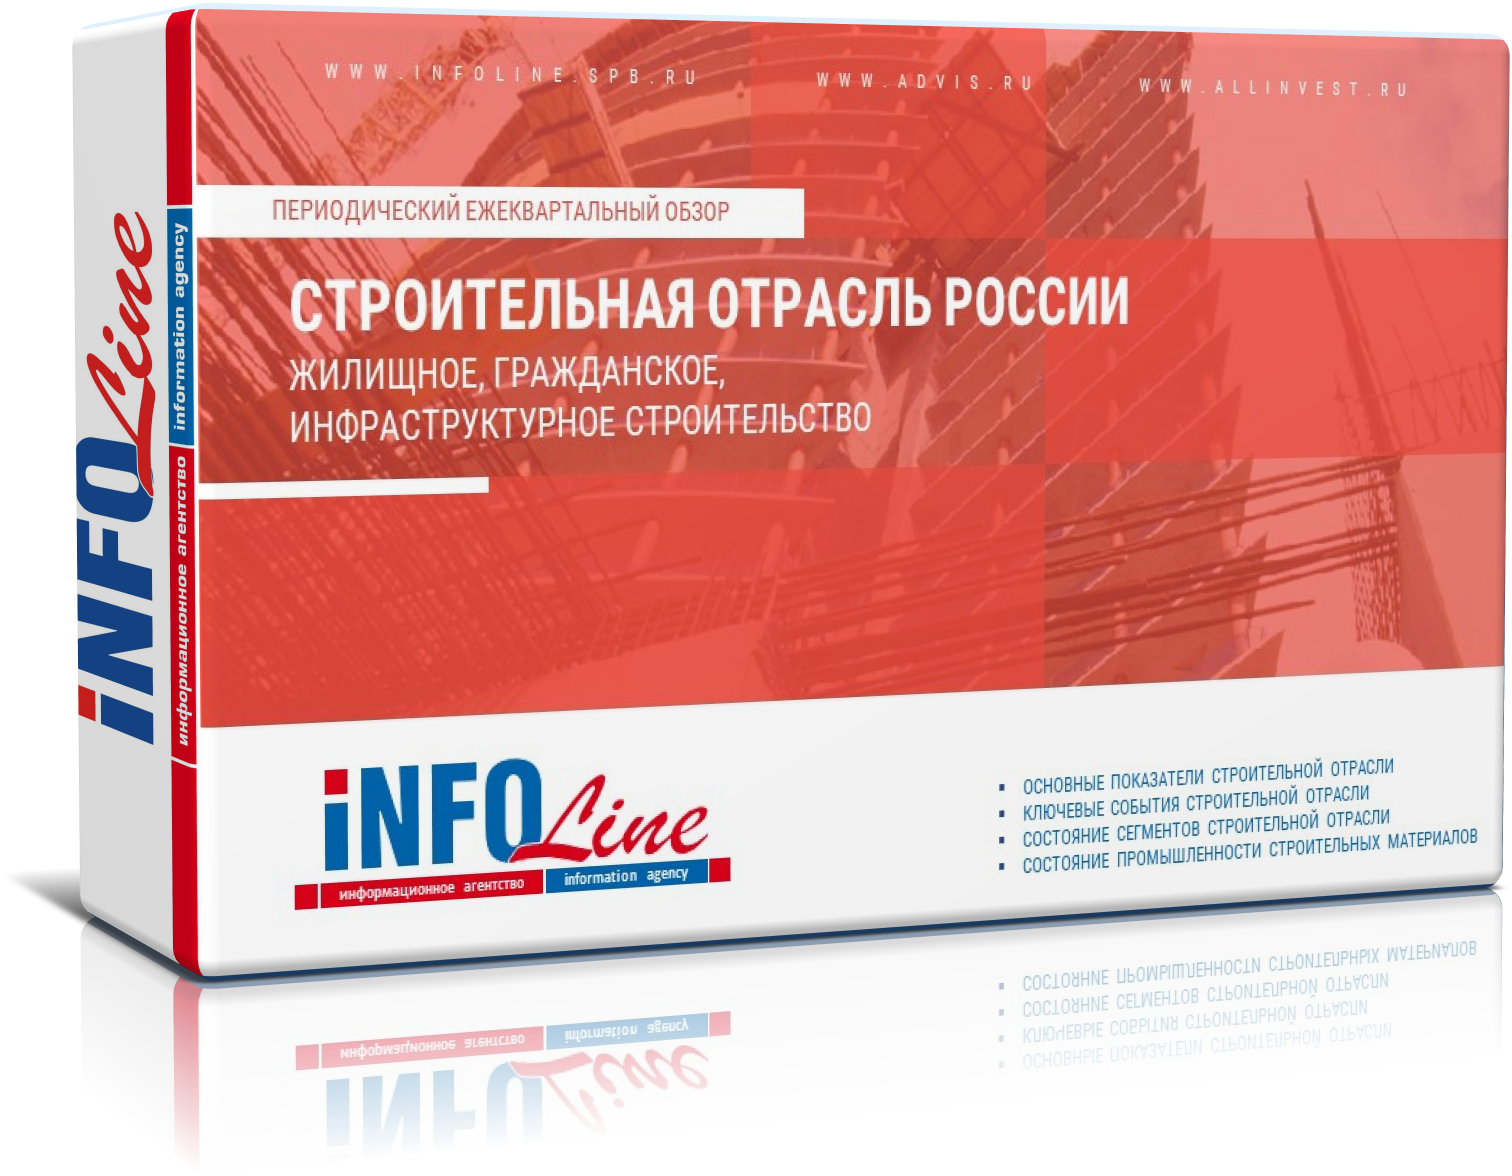 Ежеквартальный обзор "Строительная отрасль РФ: жилищное, гражданское, инфраструктурное строительство"